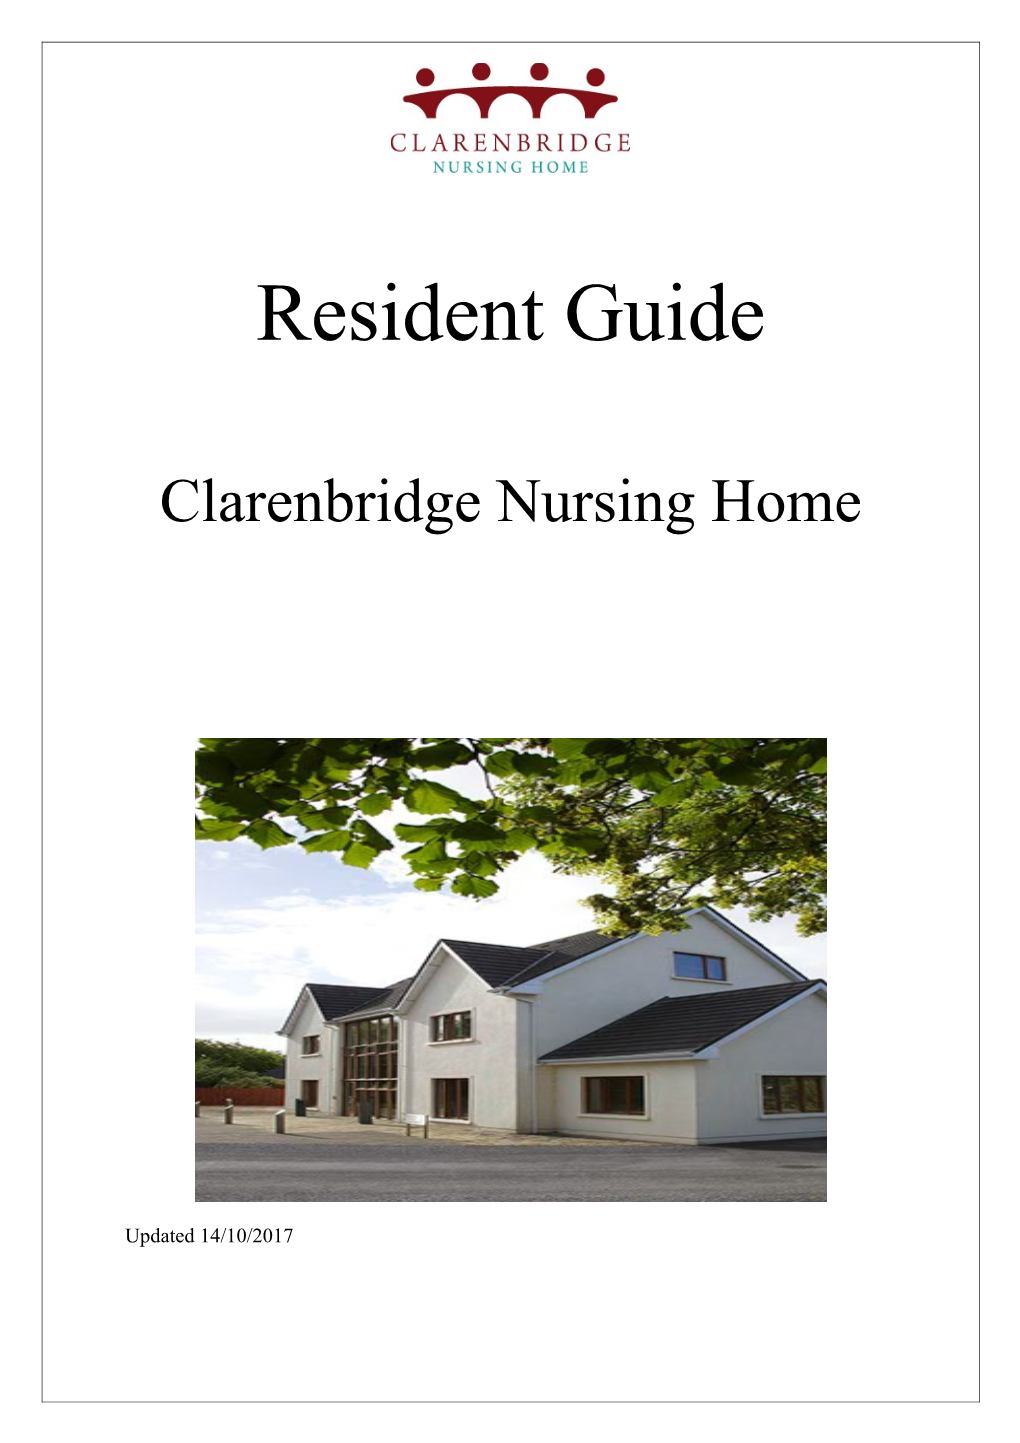 Clarenbridge Nursing Home